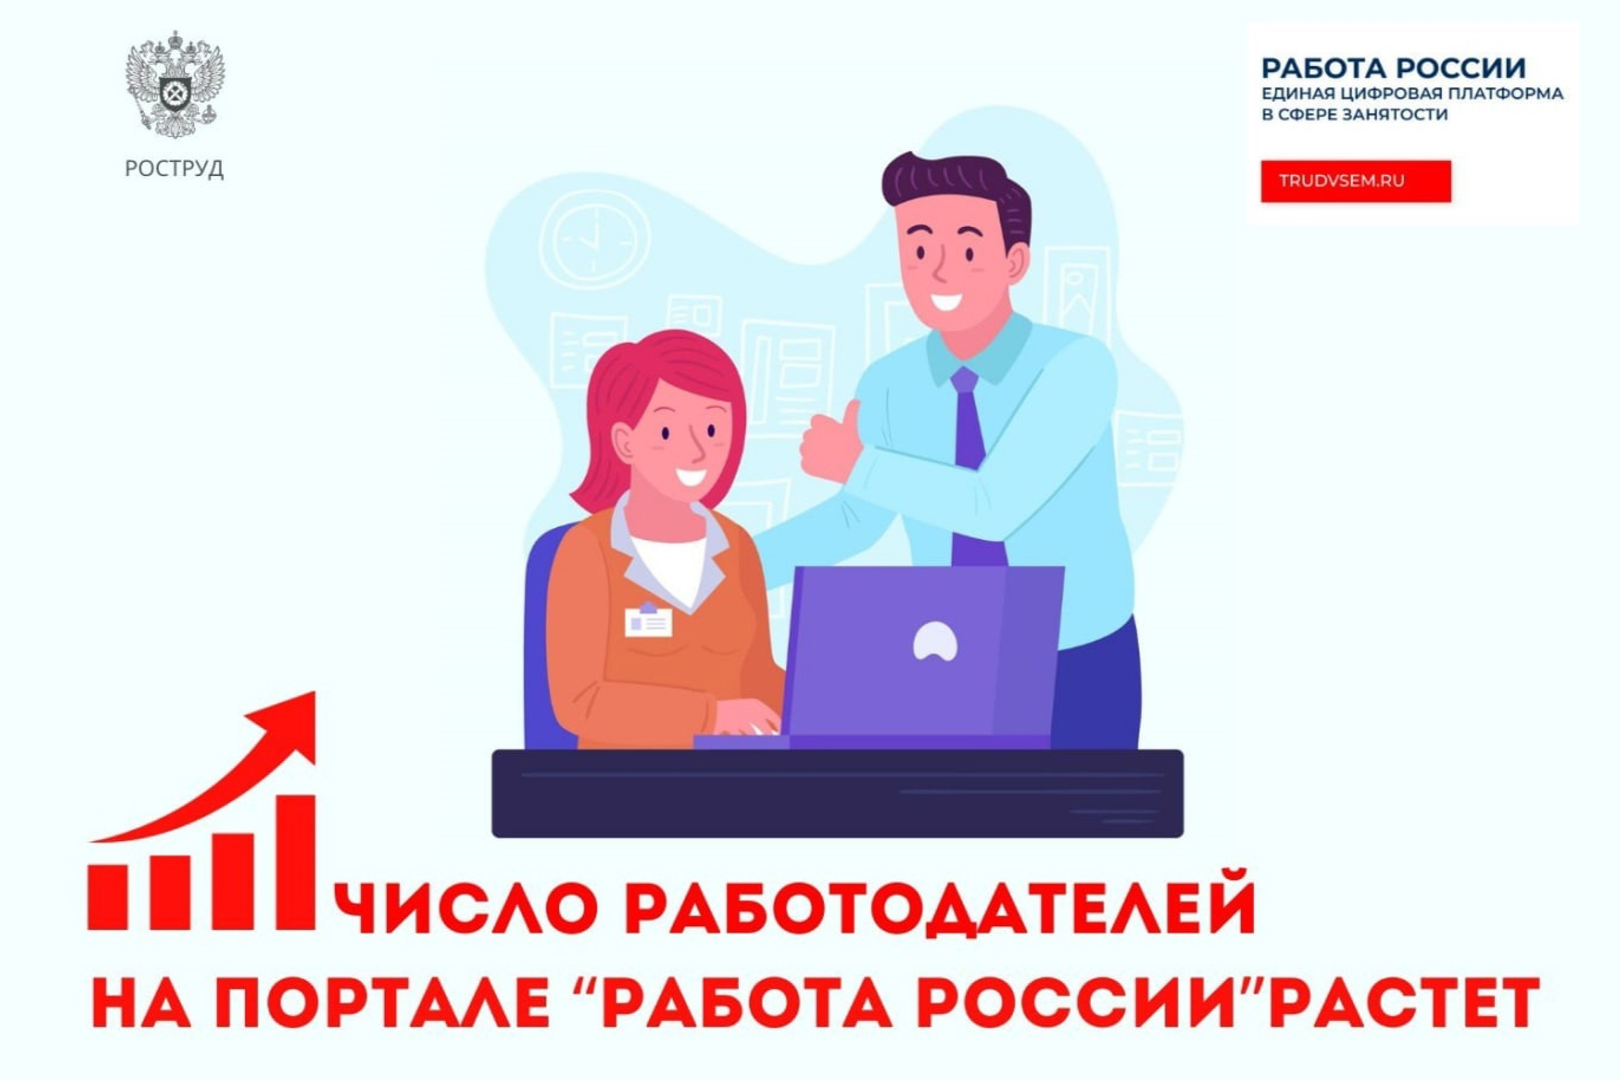 Более 50 тысяч работодателей присоединились к порталу «Работа России» с начала этого года